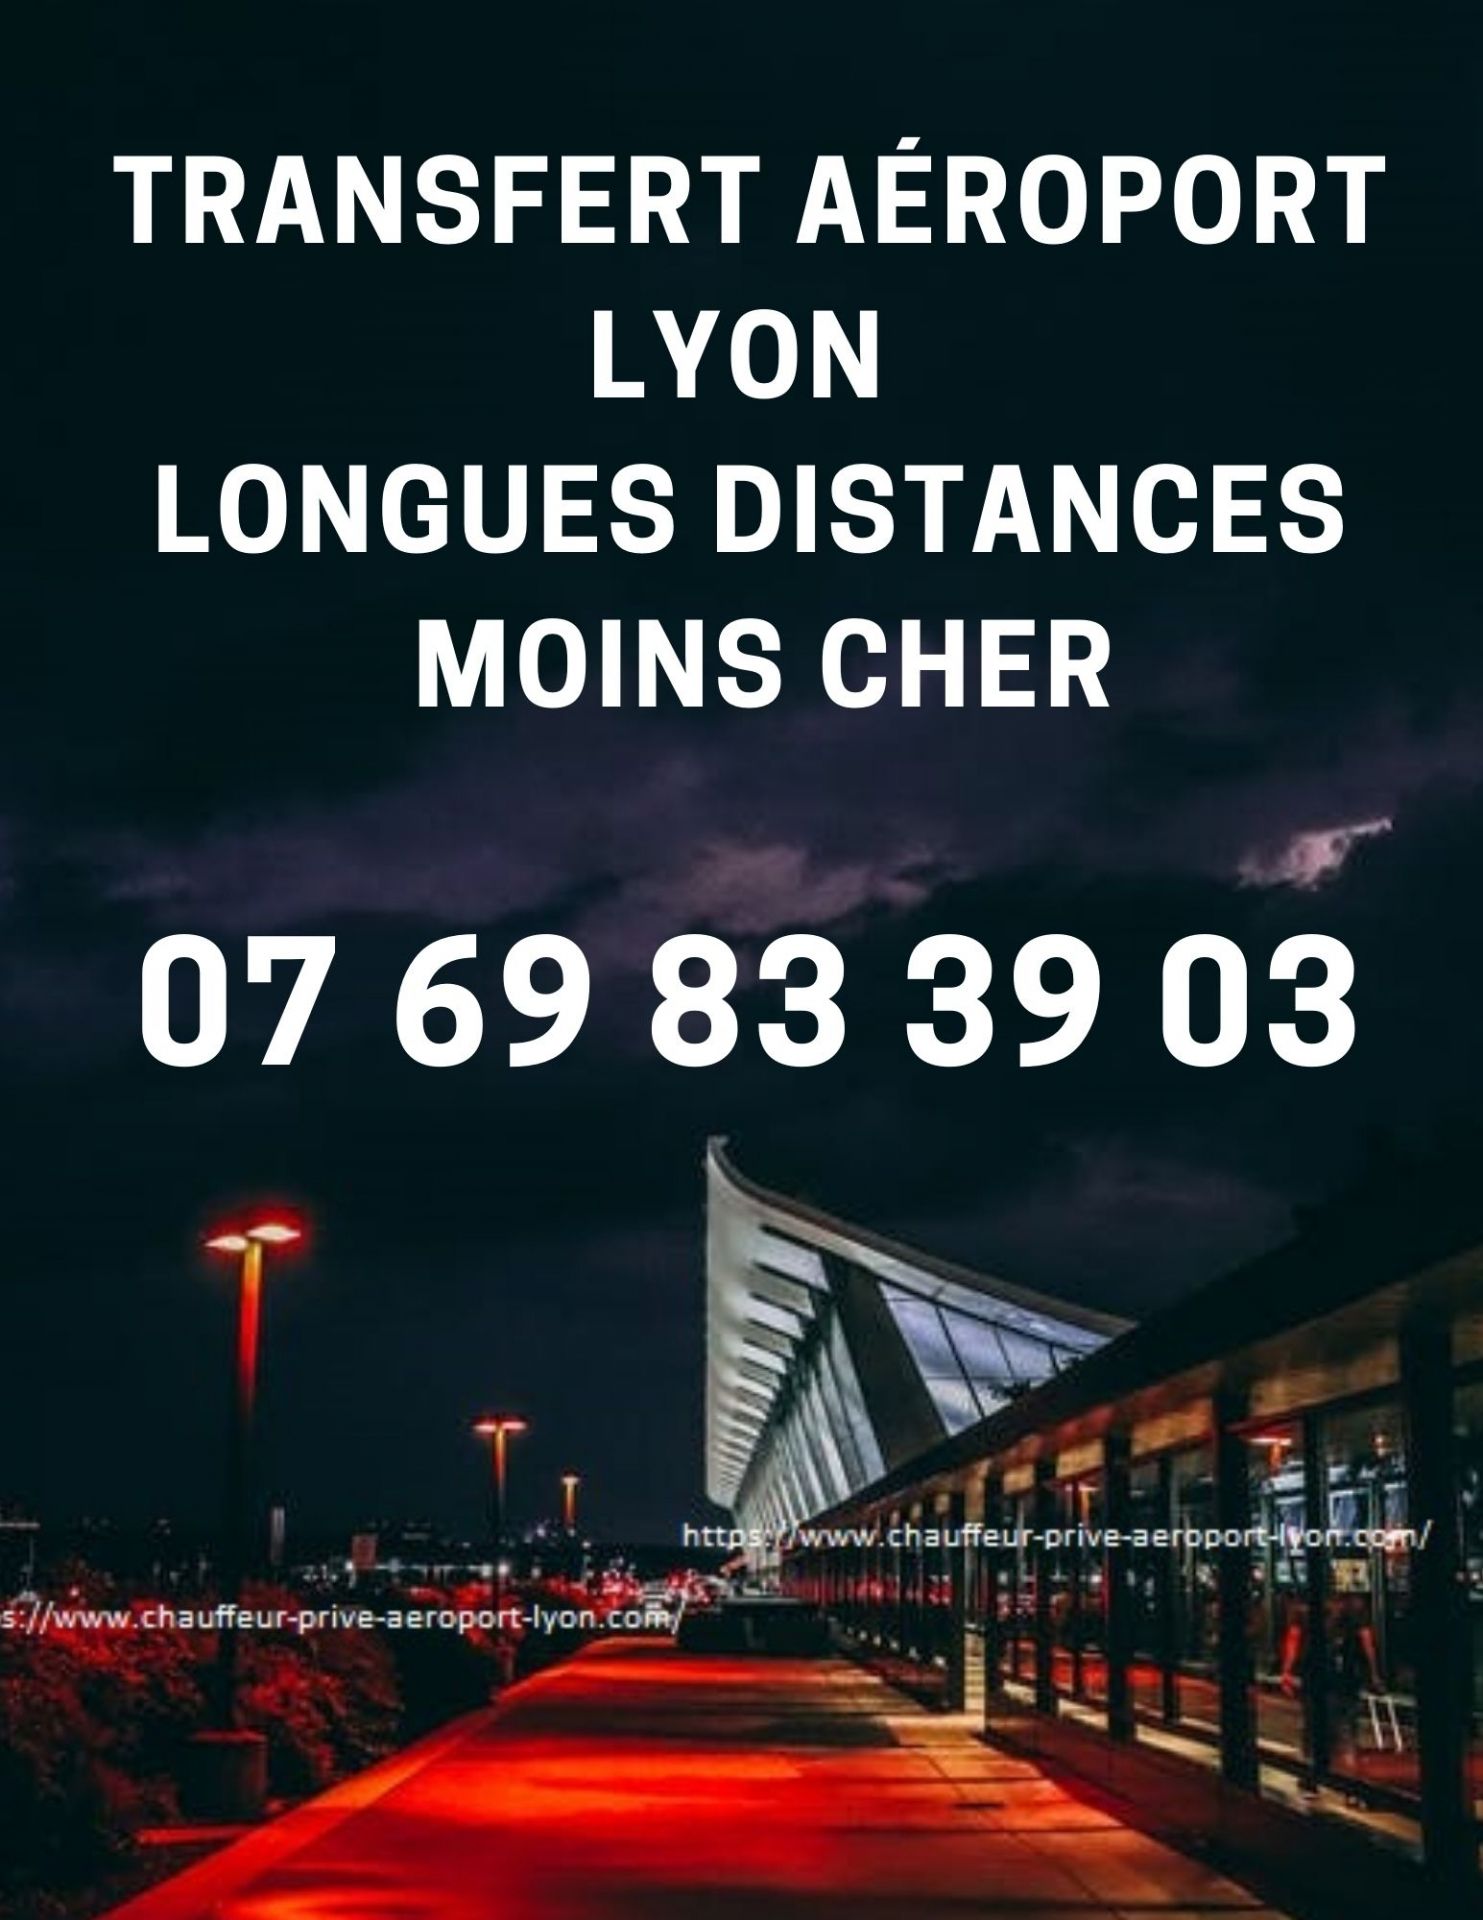 vtc-aeroport_lyontransfert_aeroport_lyon-VTC-aeroport lyon- taxi_vtc_Aéroport_lyon_taxi Transfert-lyon-aeroport-transfert-aeroport-lyon-station de ski-transfert-aeroport-_vtc_ navette-taxi-Aéroport-Lyon-saint-ex-.mp4